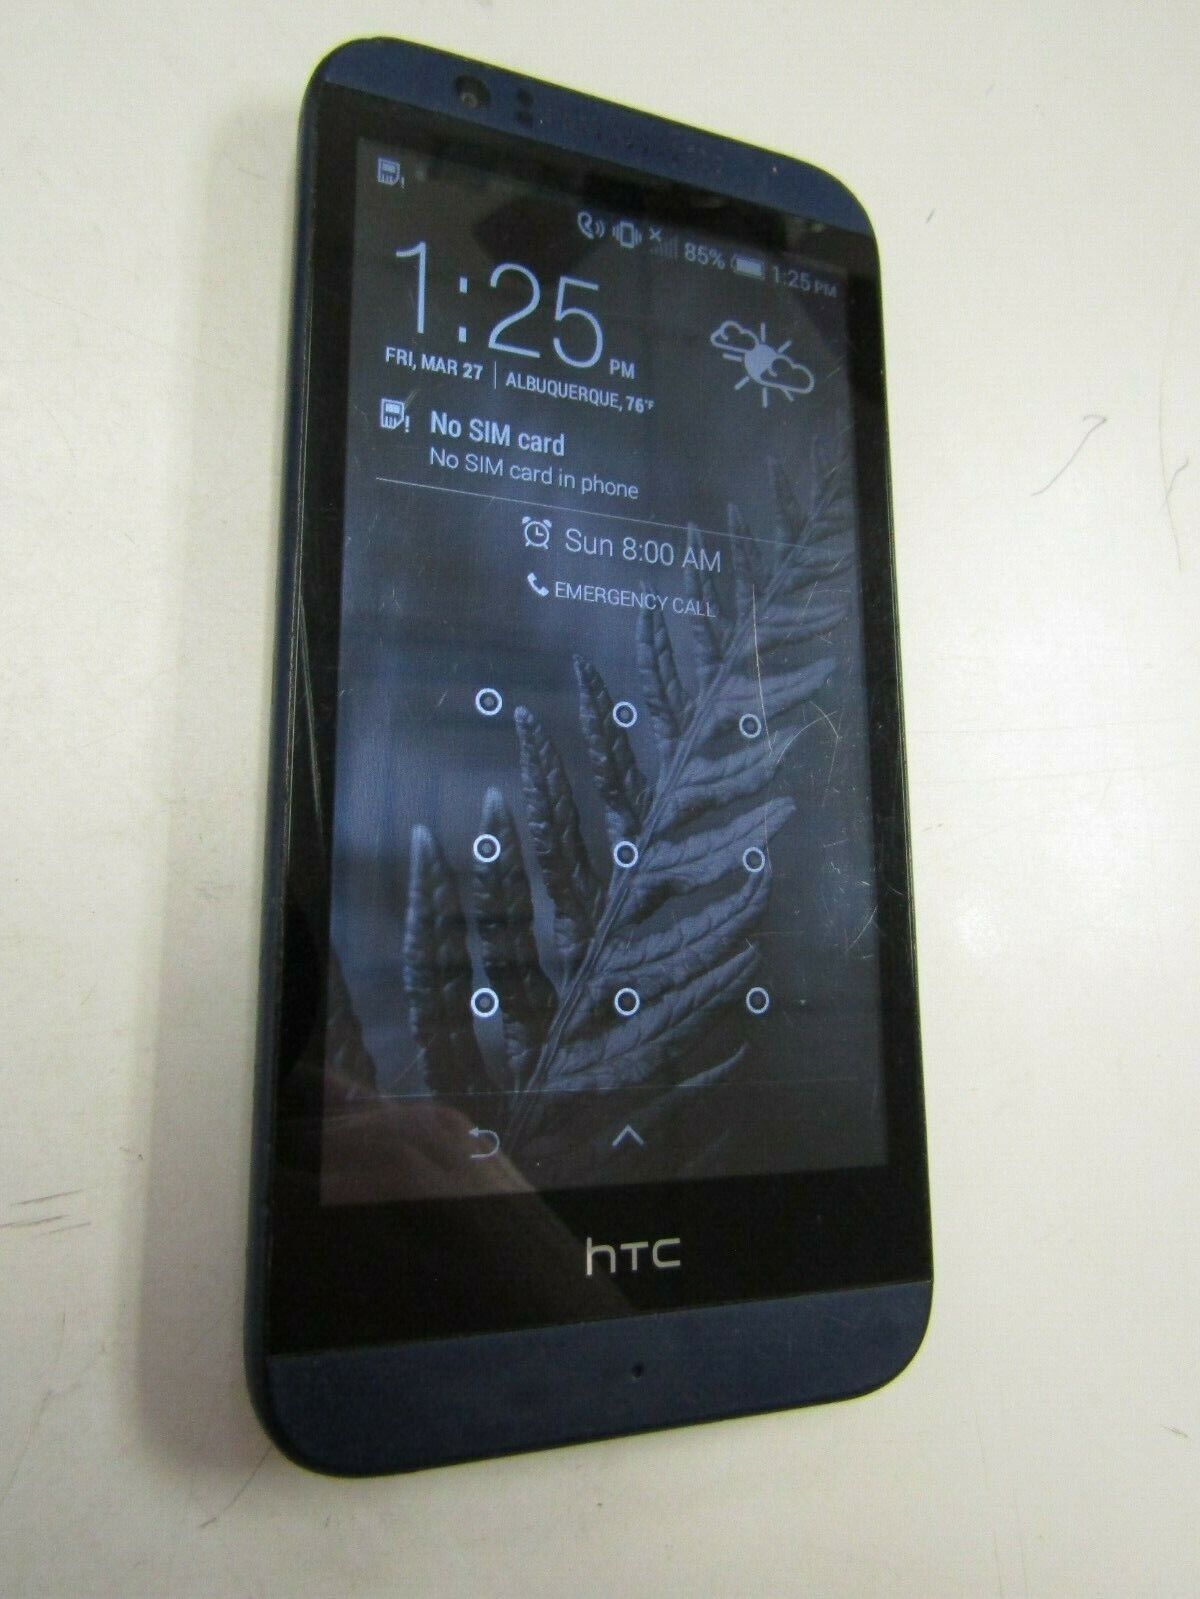 HTC DESIRE 510 (UNKNOWN CARRIER) CLEAN ESN, WORKS, PLEASE READ! 47797 HTC HTC Desire 510